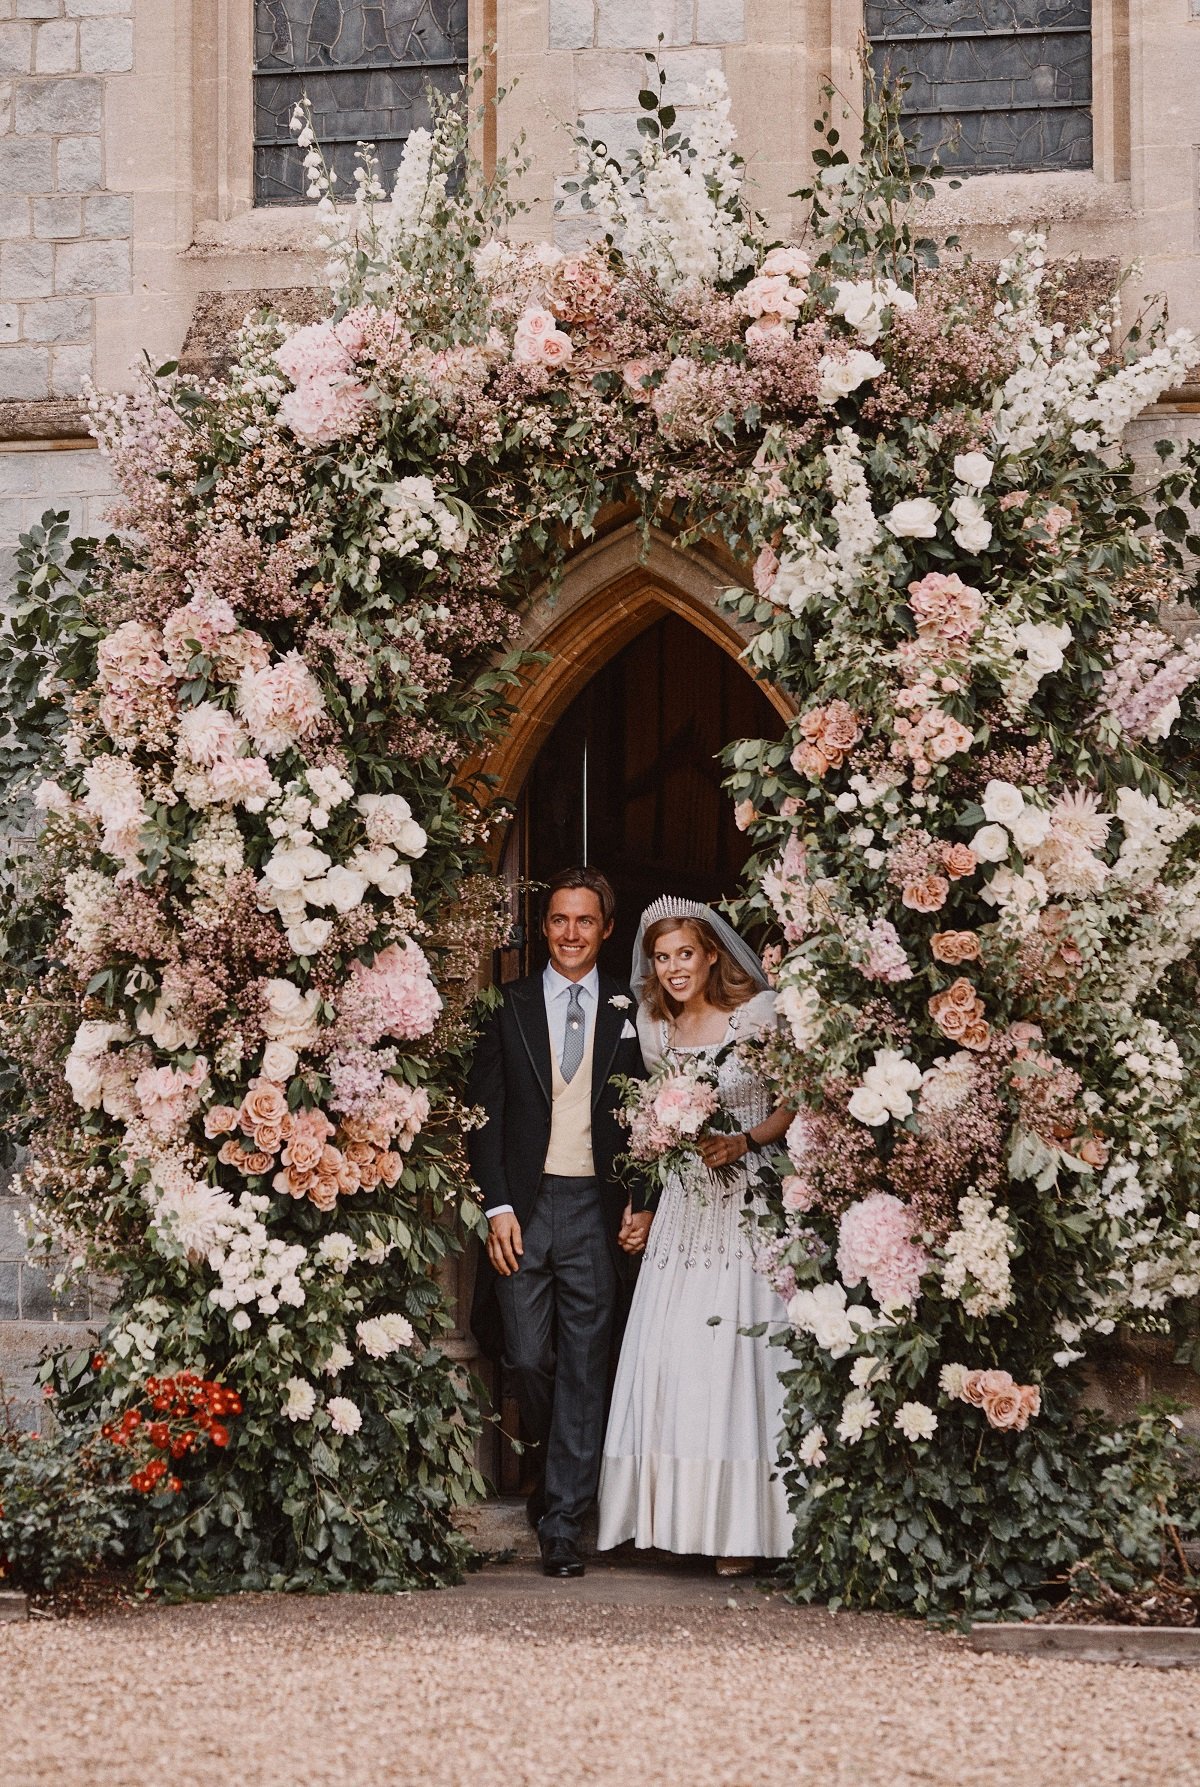 Prinzessin Beatrice und Edoardo Mapelli Mozzi verlassen die königliche All Saints Chapel in der Royal Lodge, Windsor, nach ihrer Hochzeit am 17. Juli 2020 in England | Quelle: Benjamin Wheeler - WPA Pool/Getty Images